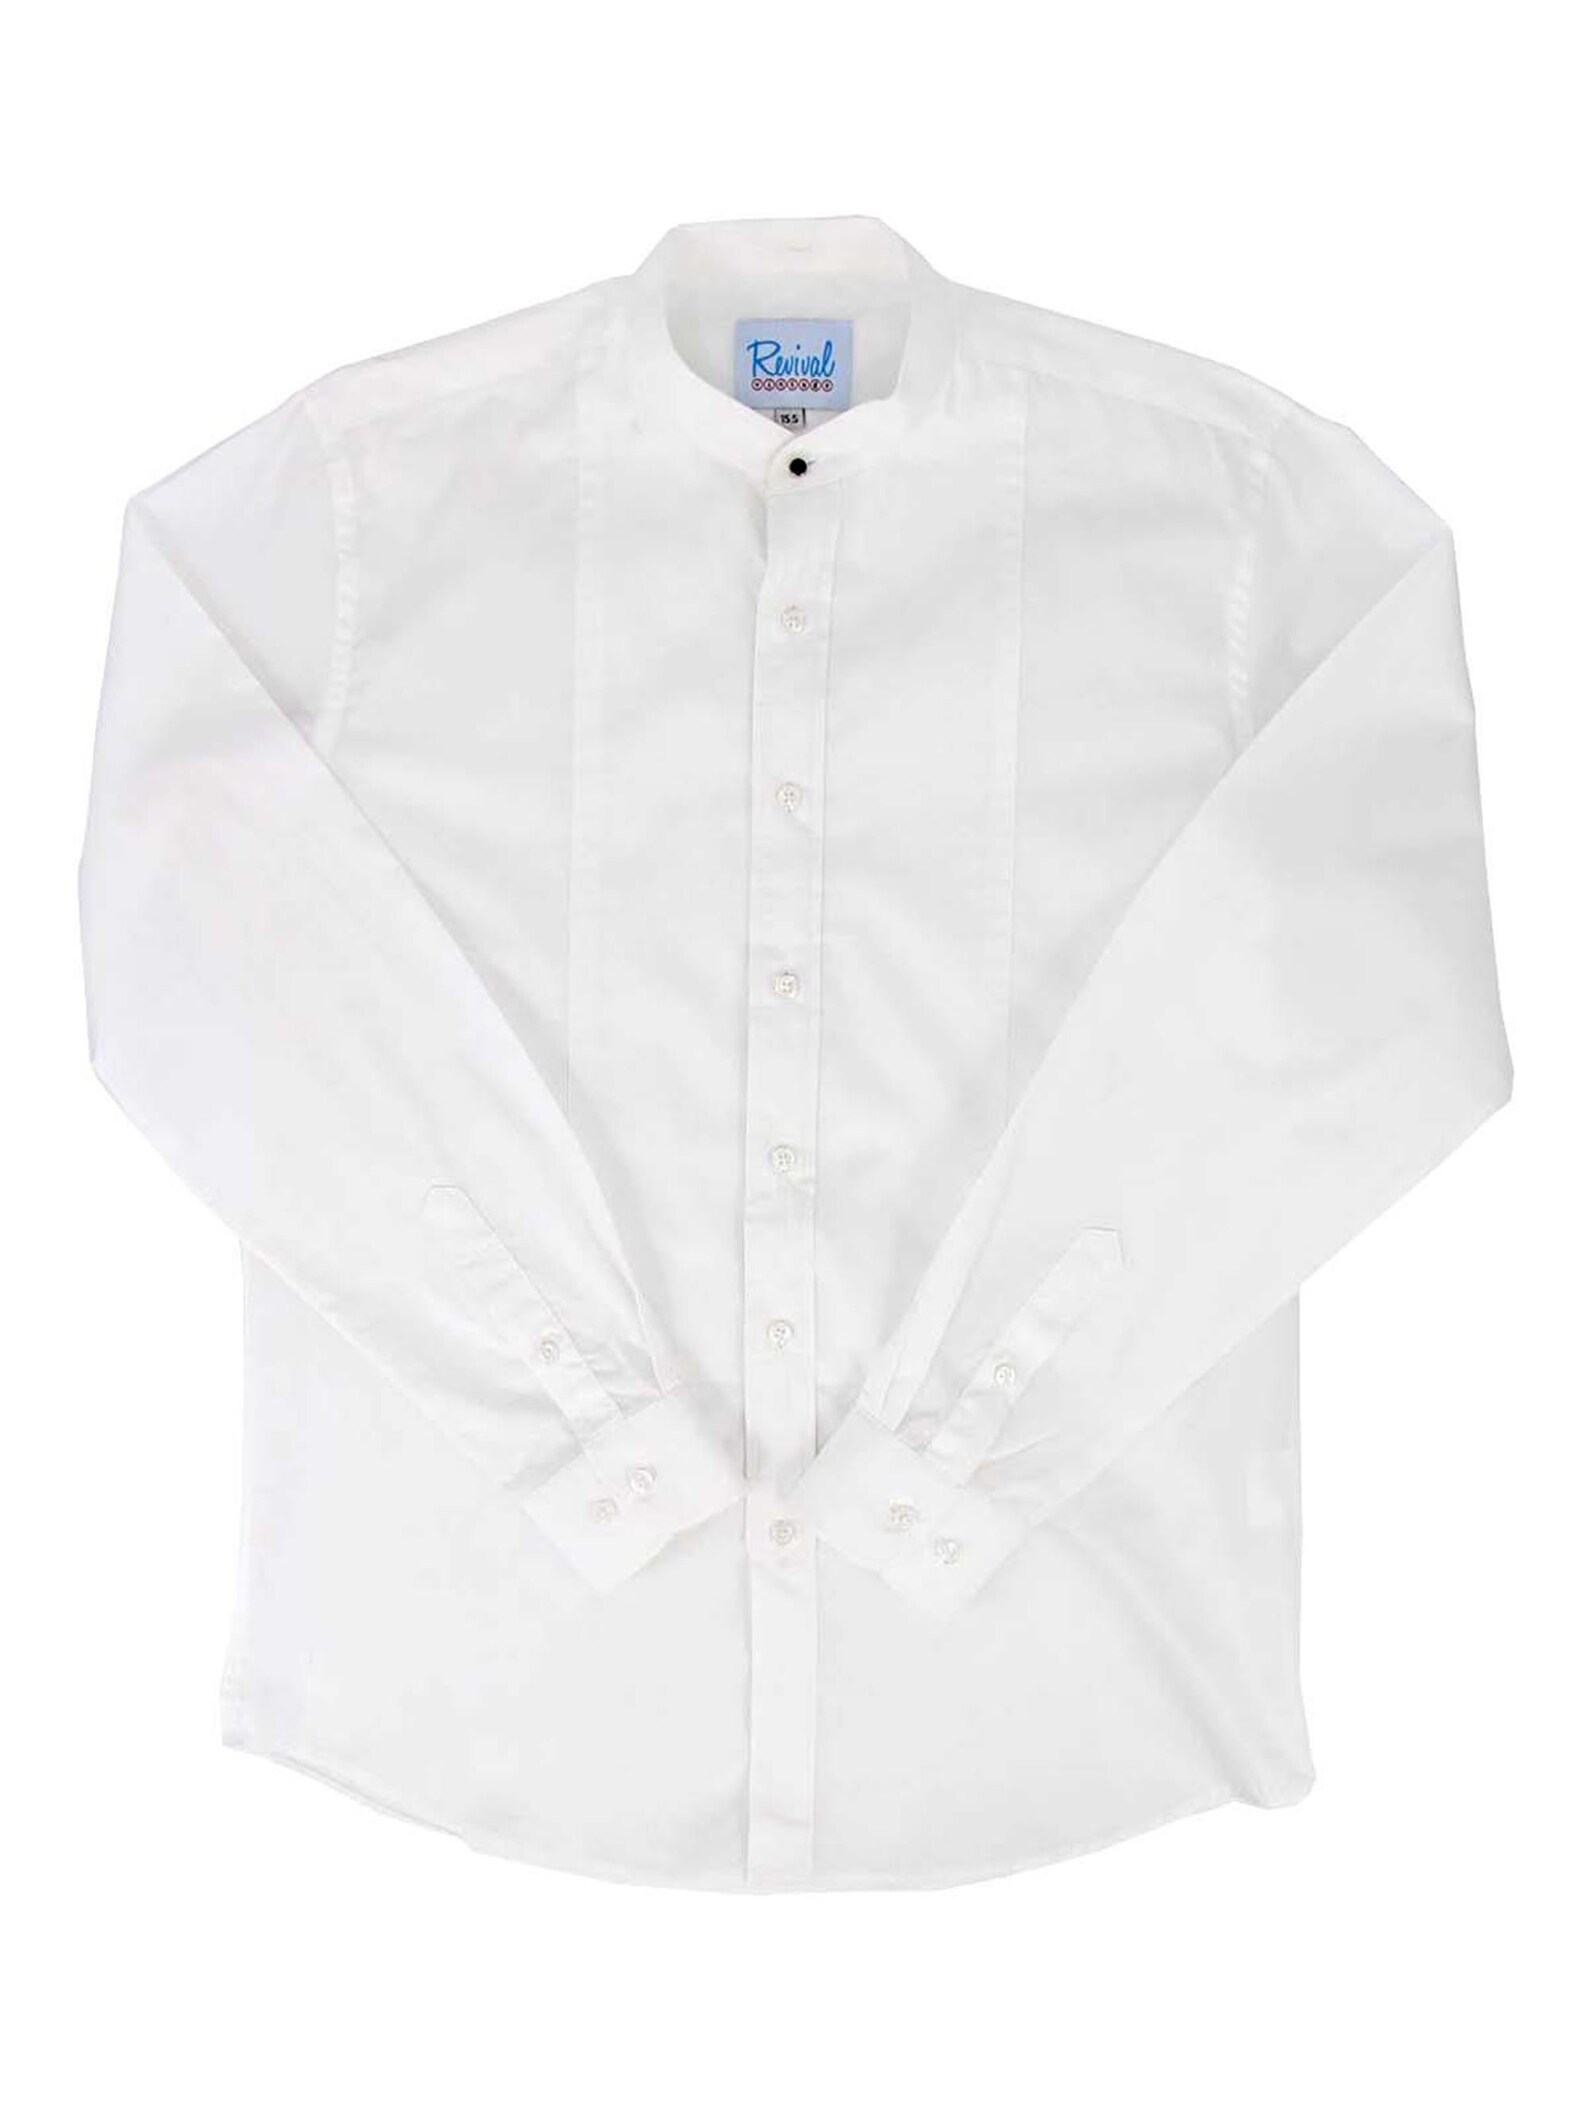 Mens 1940s Spearpoint Shirt White Spearpoint Collar Shirt - Etsy UK